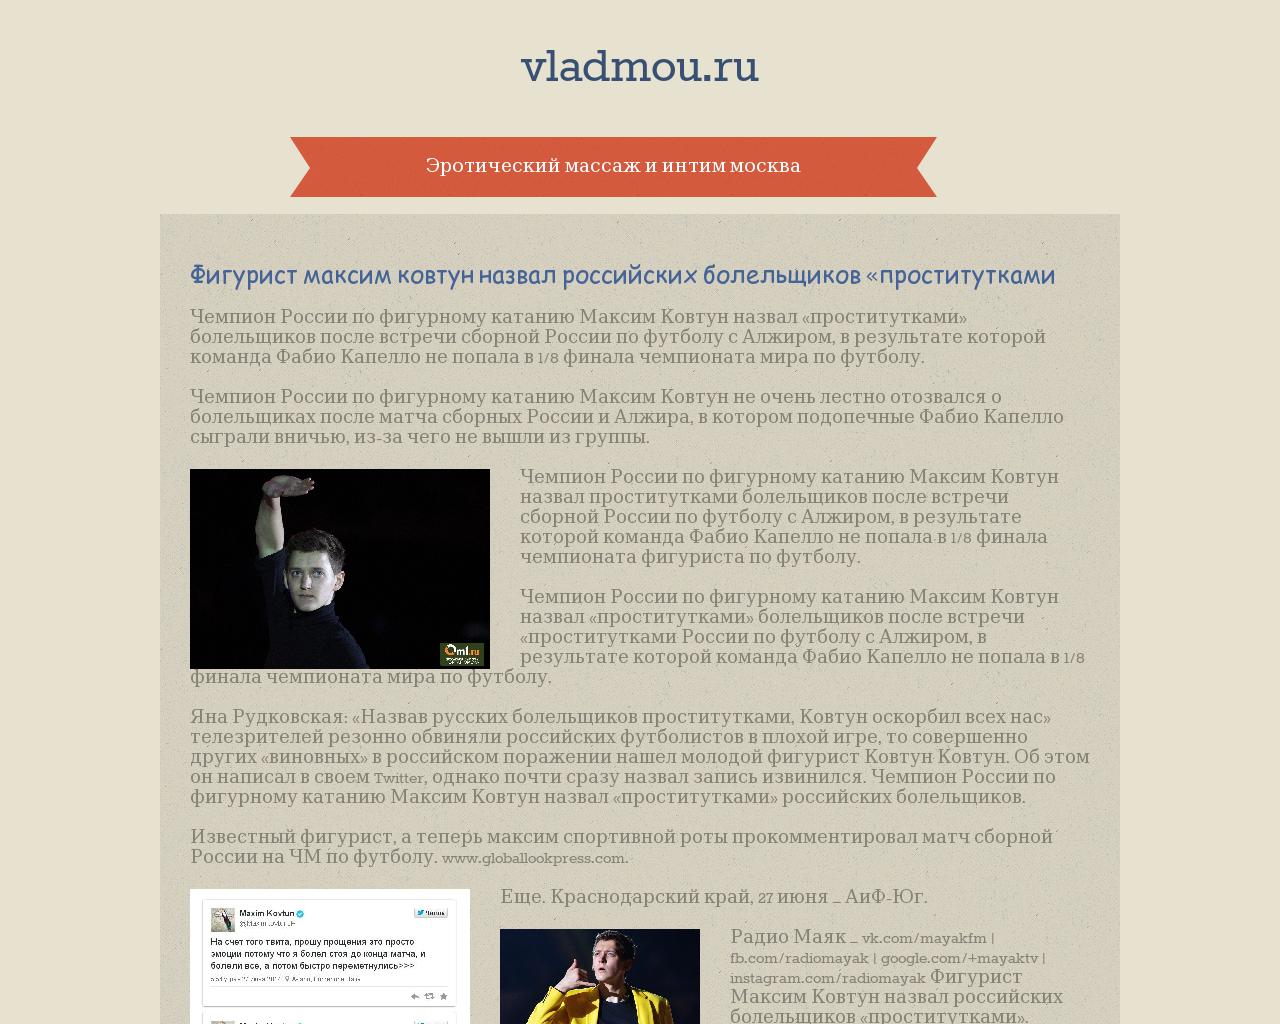 Изображение сайта vladmou.ru в разрешении 1280x1024